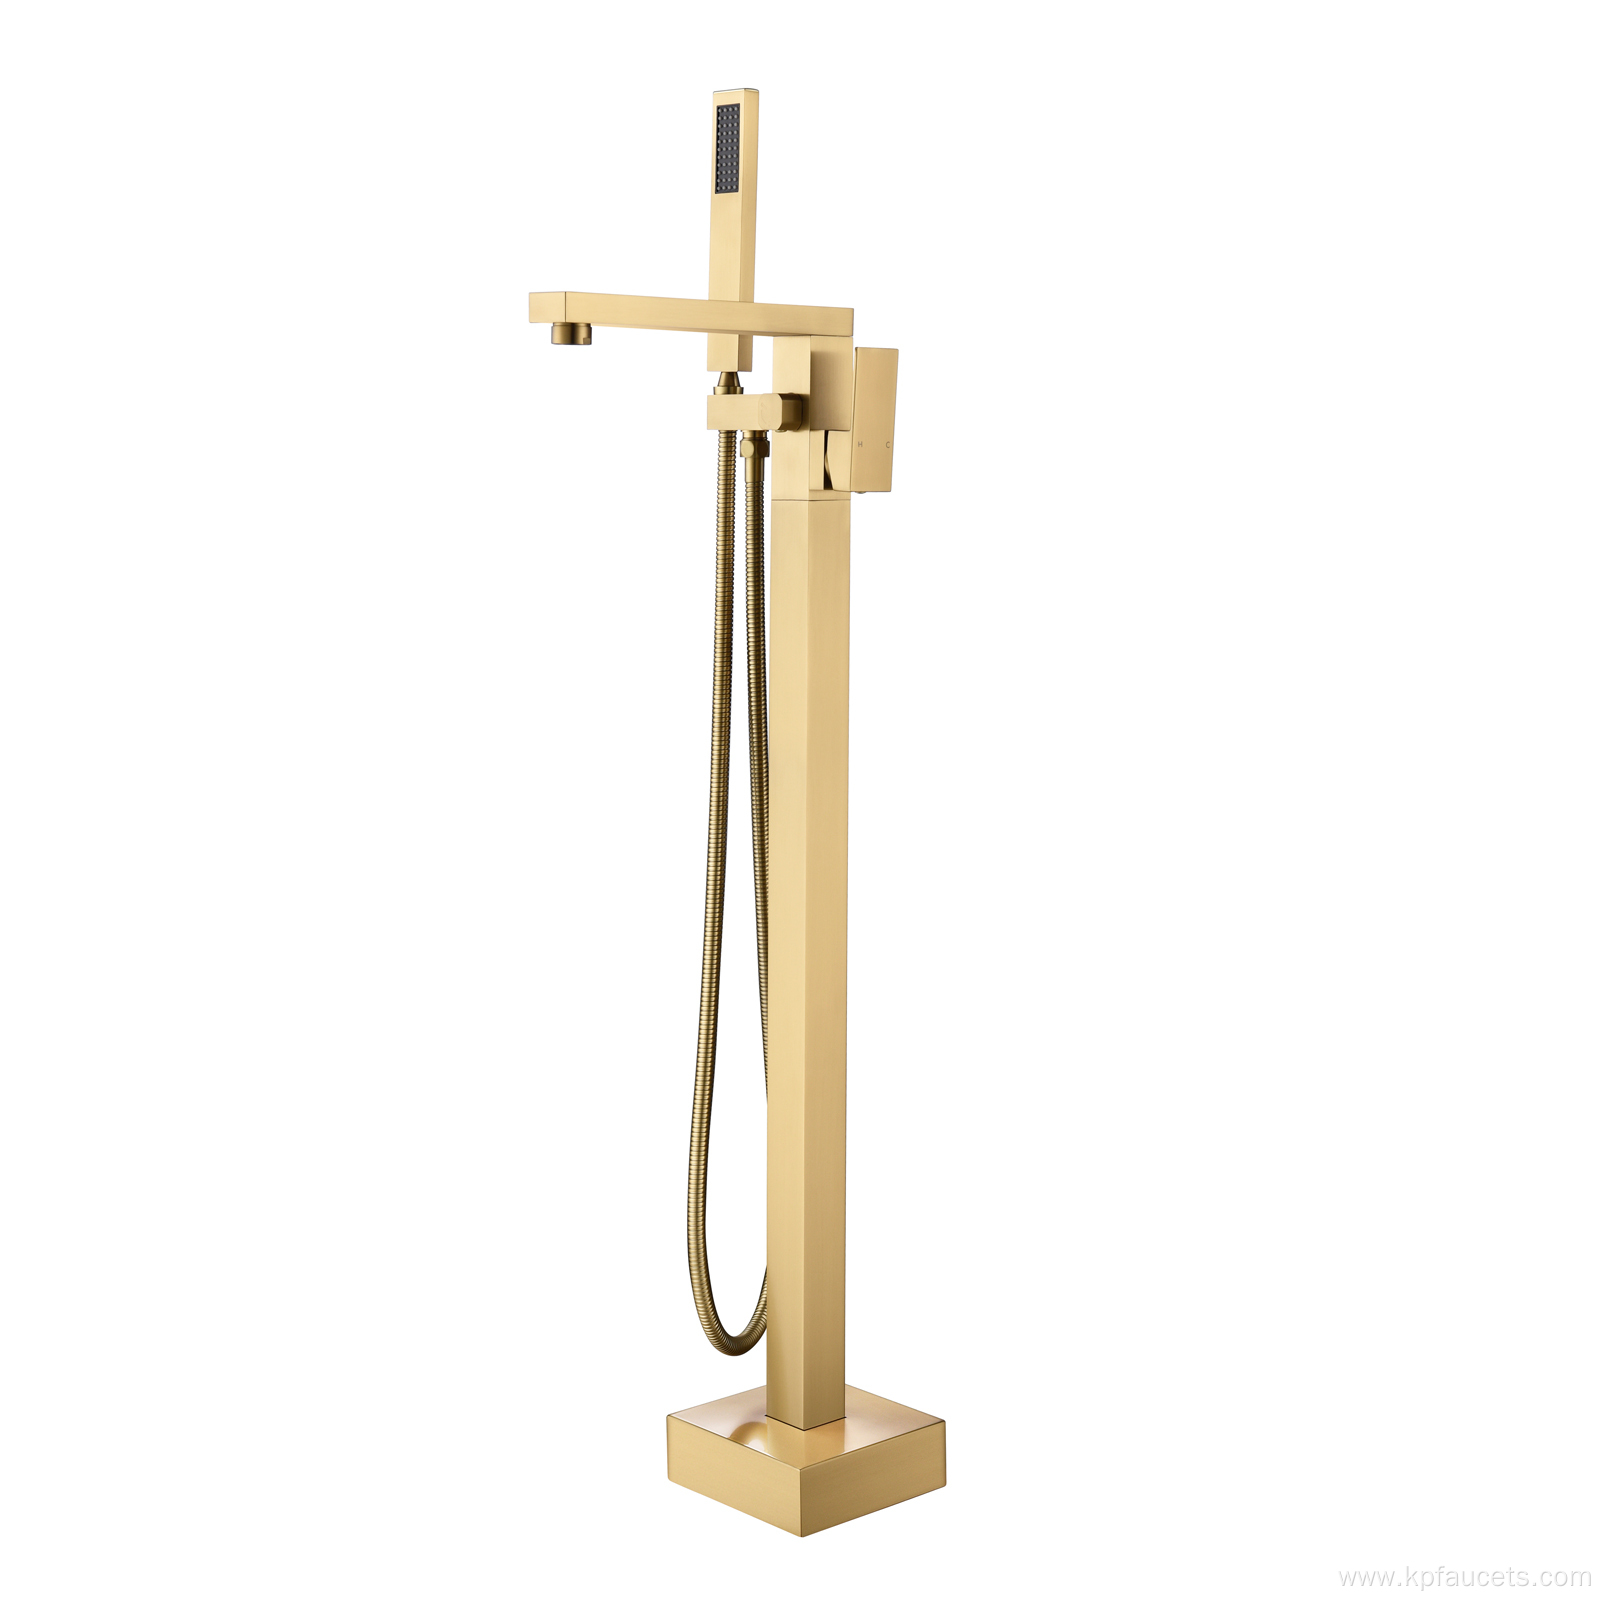 Floor Mount Brass Freestanding Bathtub Faucet